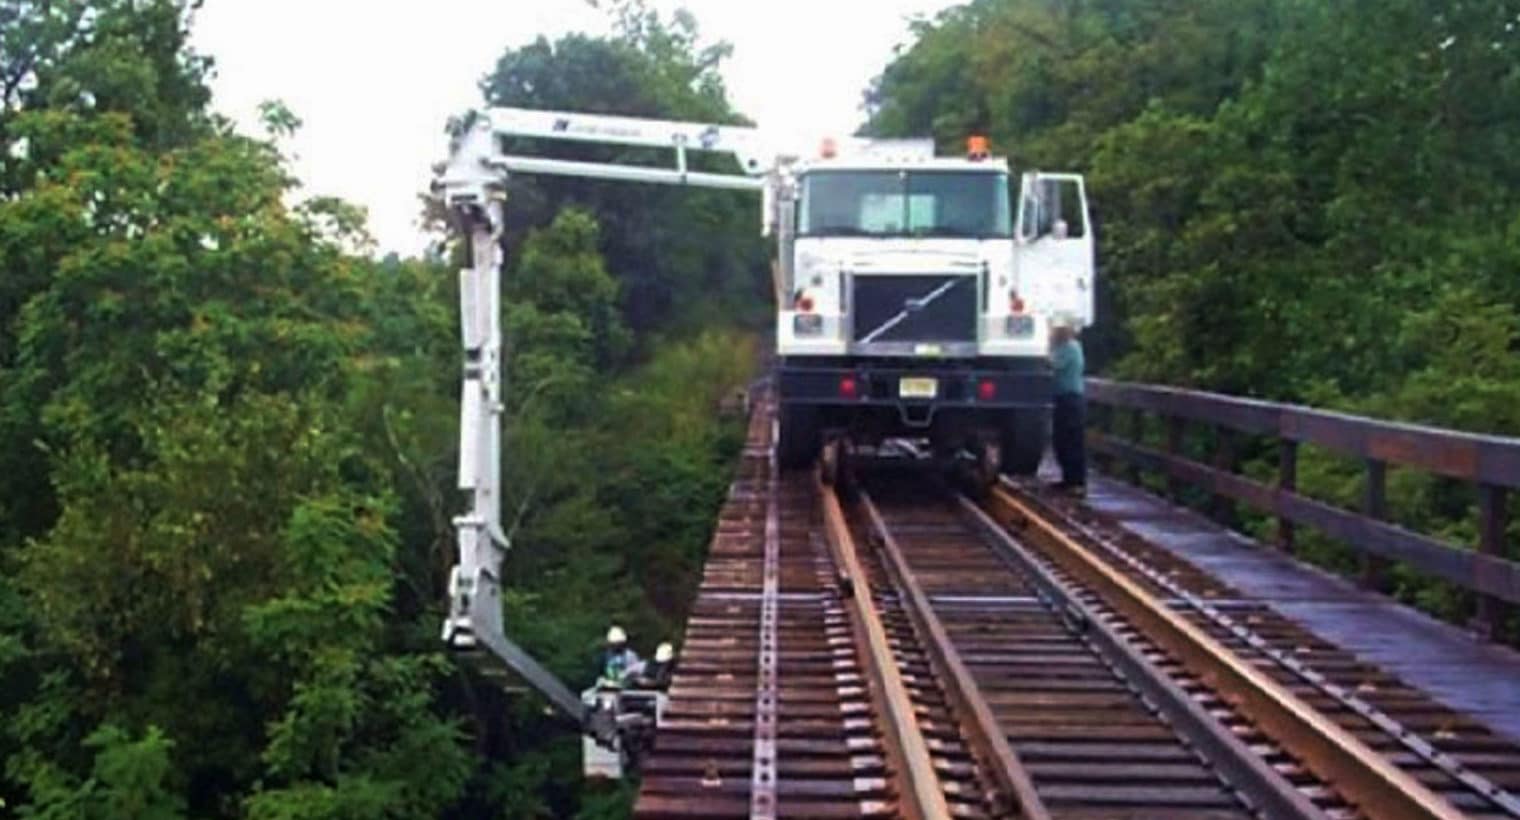 Equipment Rentals To Make Railroad Bridge Repairs Easier